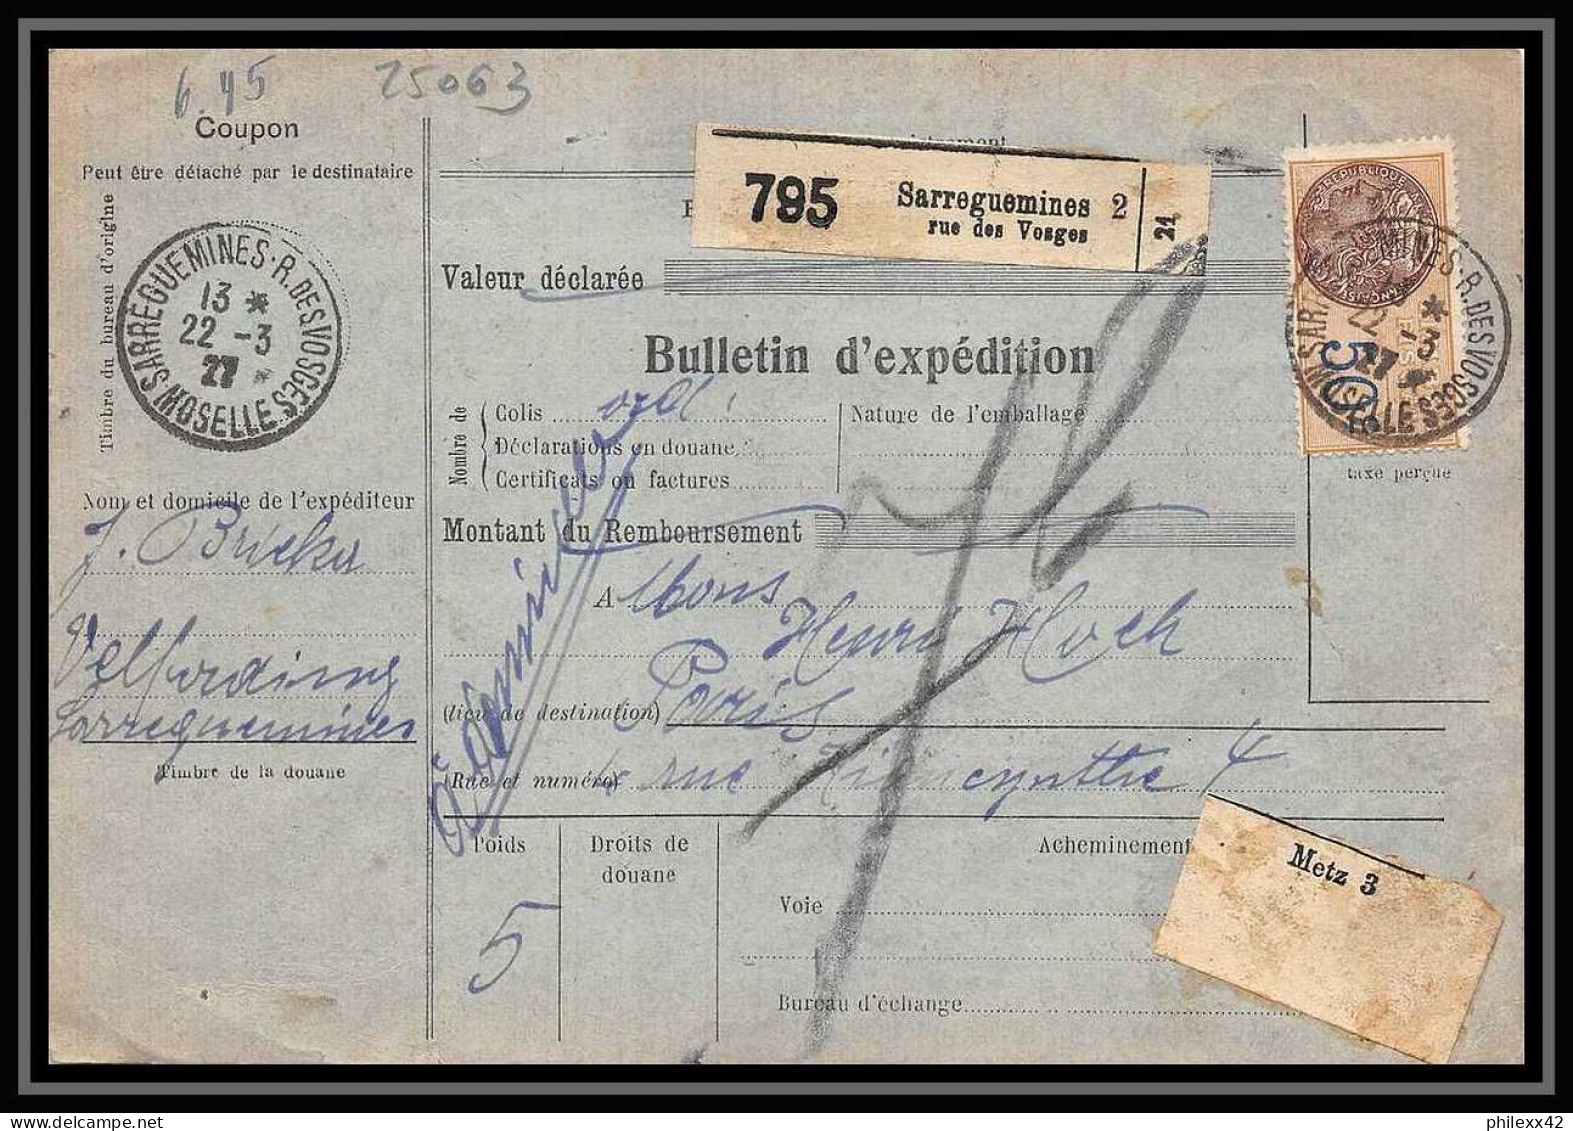 25063 Bulletin D'expédition France Colis Postaux Fiscal Haut Rhin 1927 Sarreguemines Semeuse + Merson 145+206 - Briefe U. Dokumente